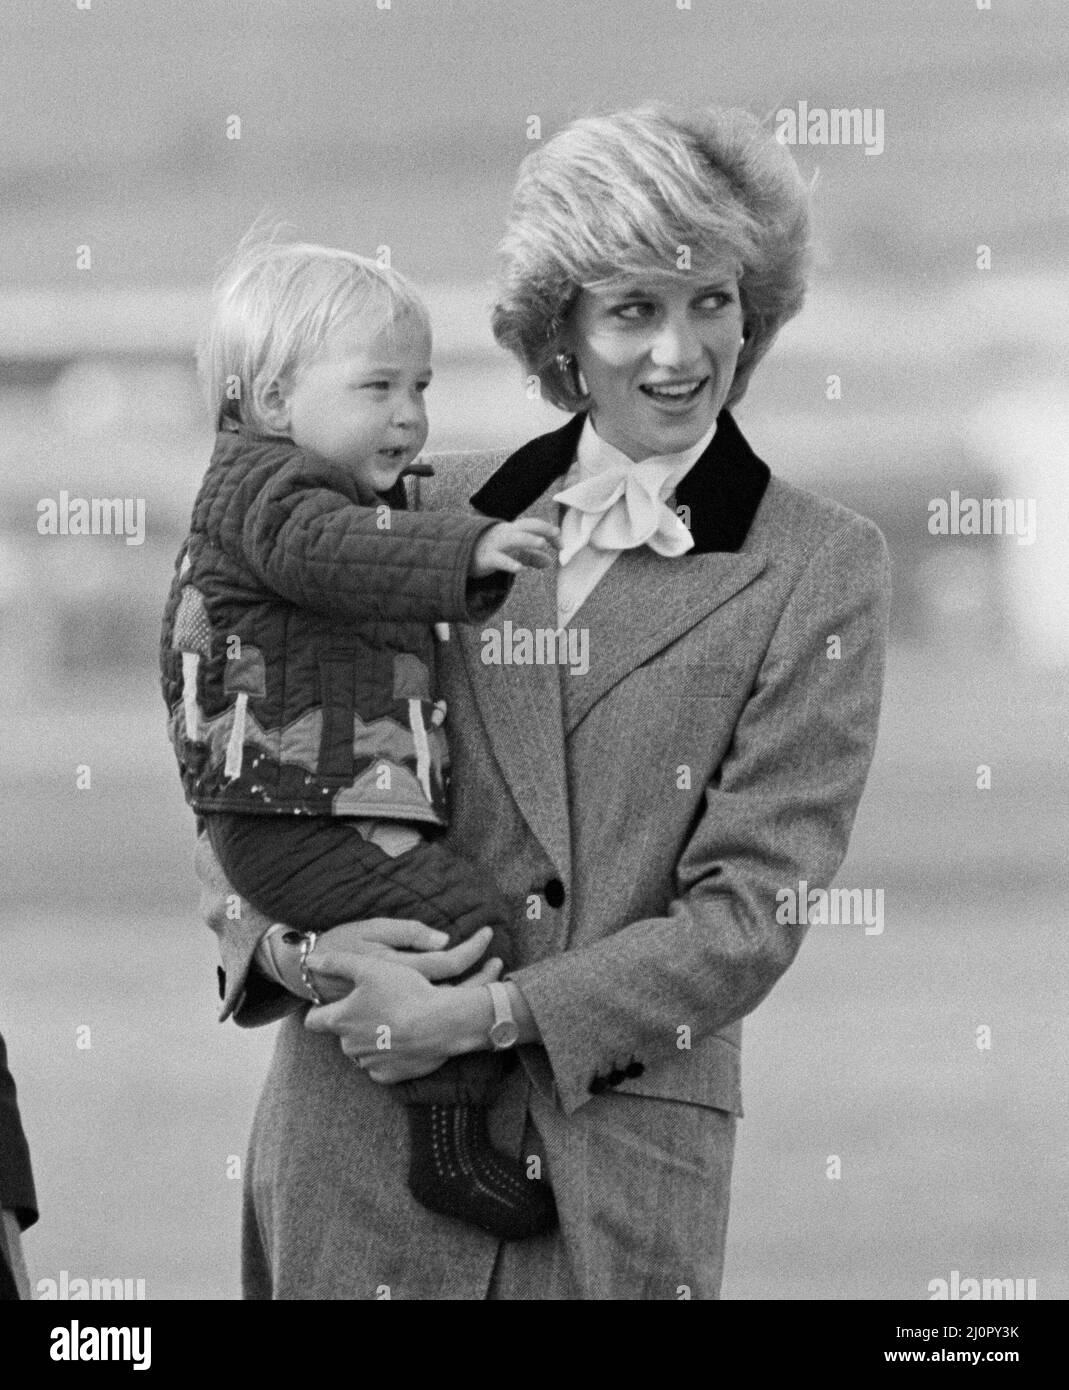 S.A.R. la princesse Diana, la princesse de Galles, tient son fils le prince William, avant de monter à bord de l'avion royal à l'aéroport d'Aberdeen, en Écosse. Photo 3 de 4 dans cette séquence de 4 photos, la princesse Diana demande au prince William de se désaler. Il ne comprend pas et ne vague pas. La princesse Diana se fait alors la vague, et le prince William se joint bientôt à elle en signe d'agité. Copie de sa mère. Il s'agit peut-être d'une vague royale, même la première, d'un prince William âgé de 16th mois. Photo prise le 24th octobre 1983 Banque D'Images